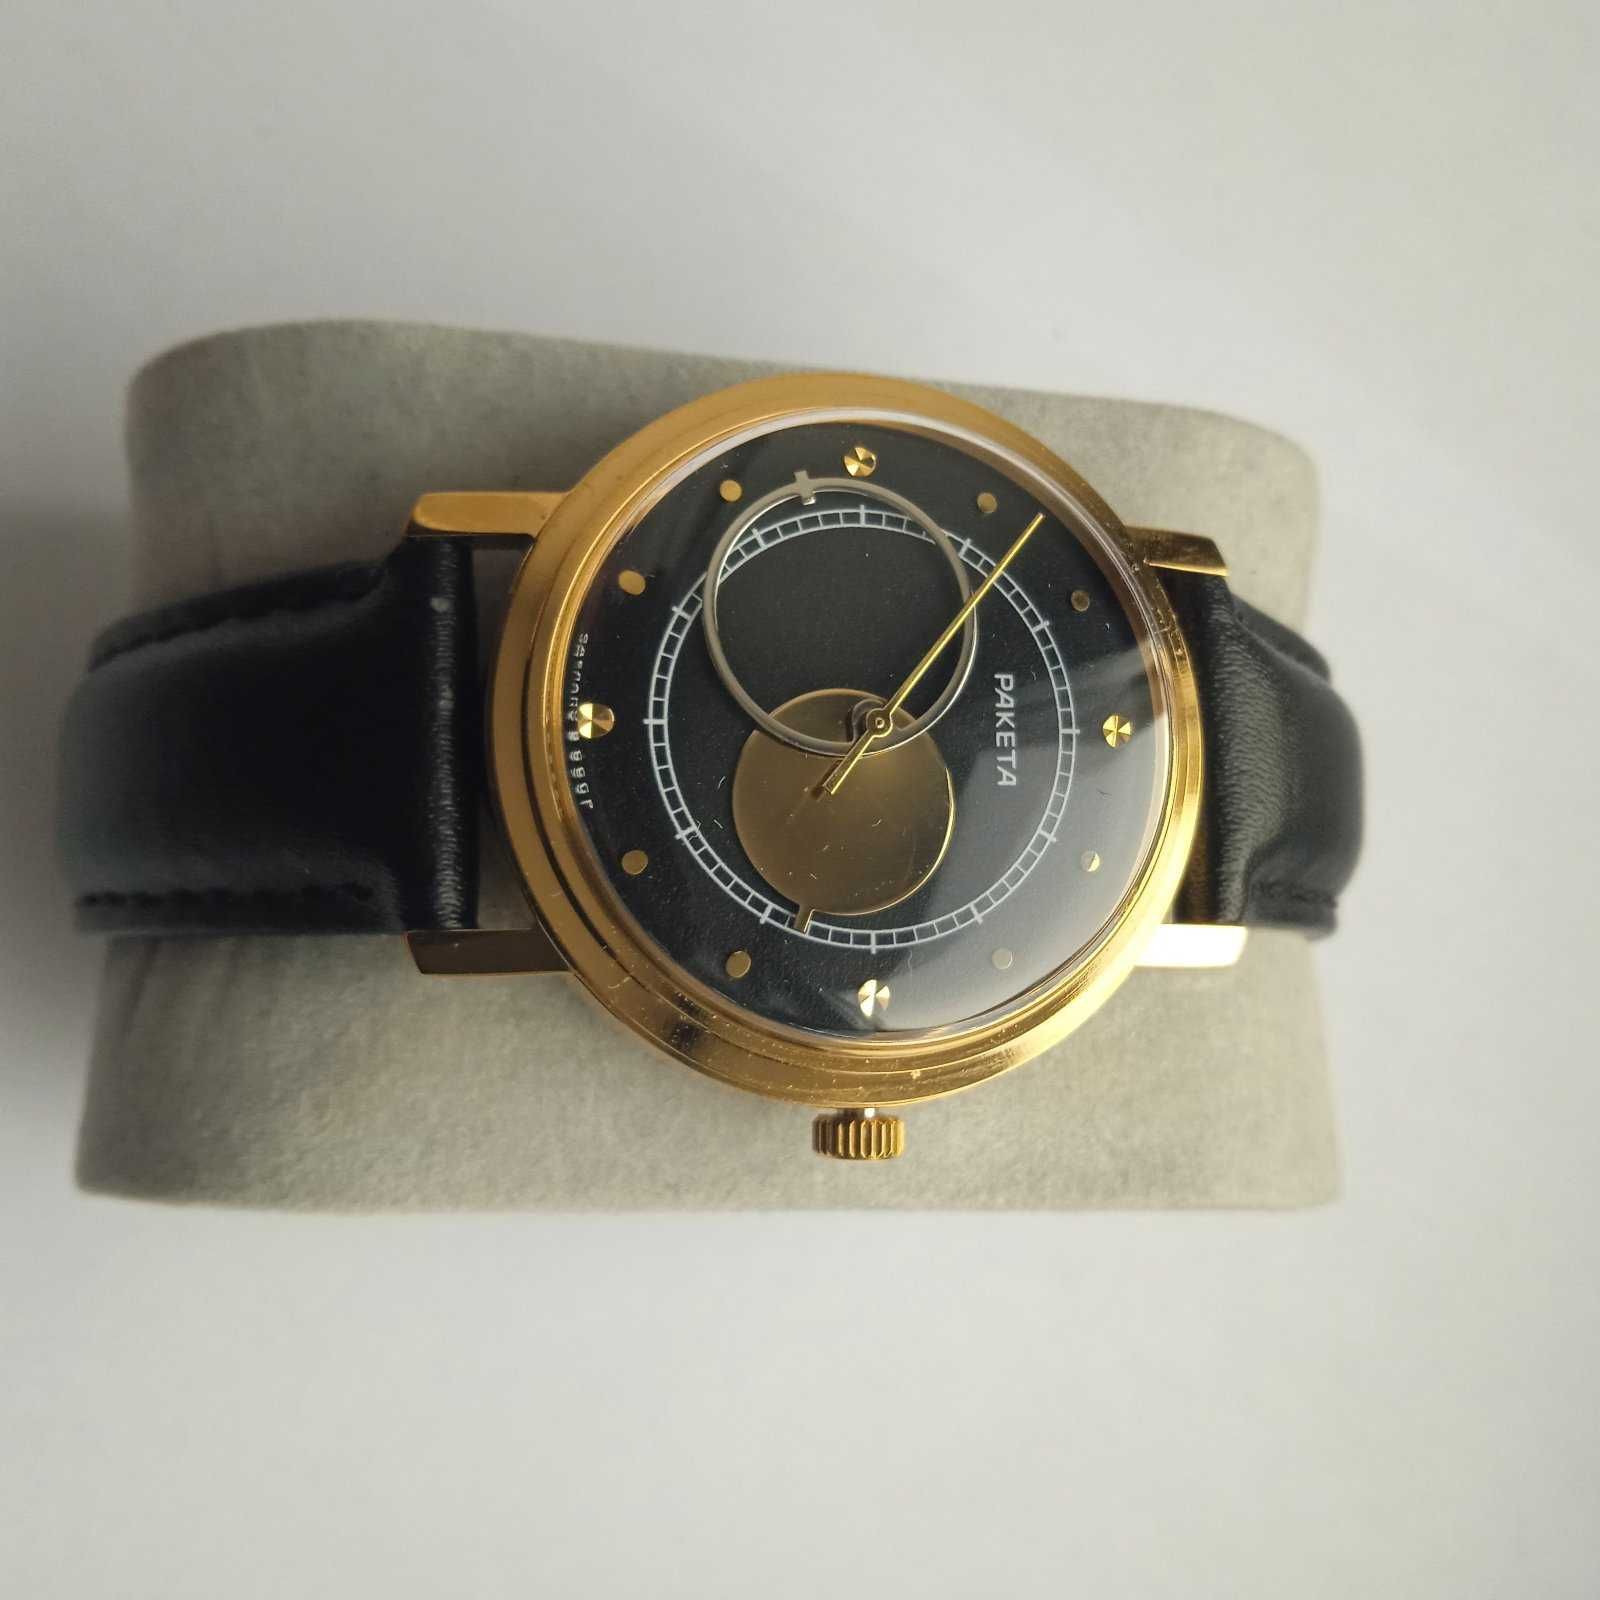 Zegarek zssr Rakieta Kopernik 2609.